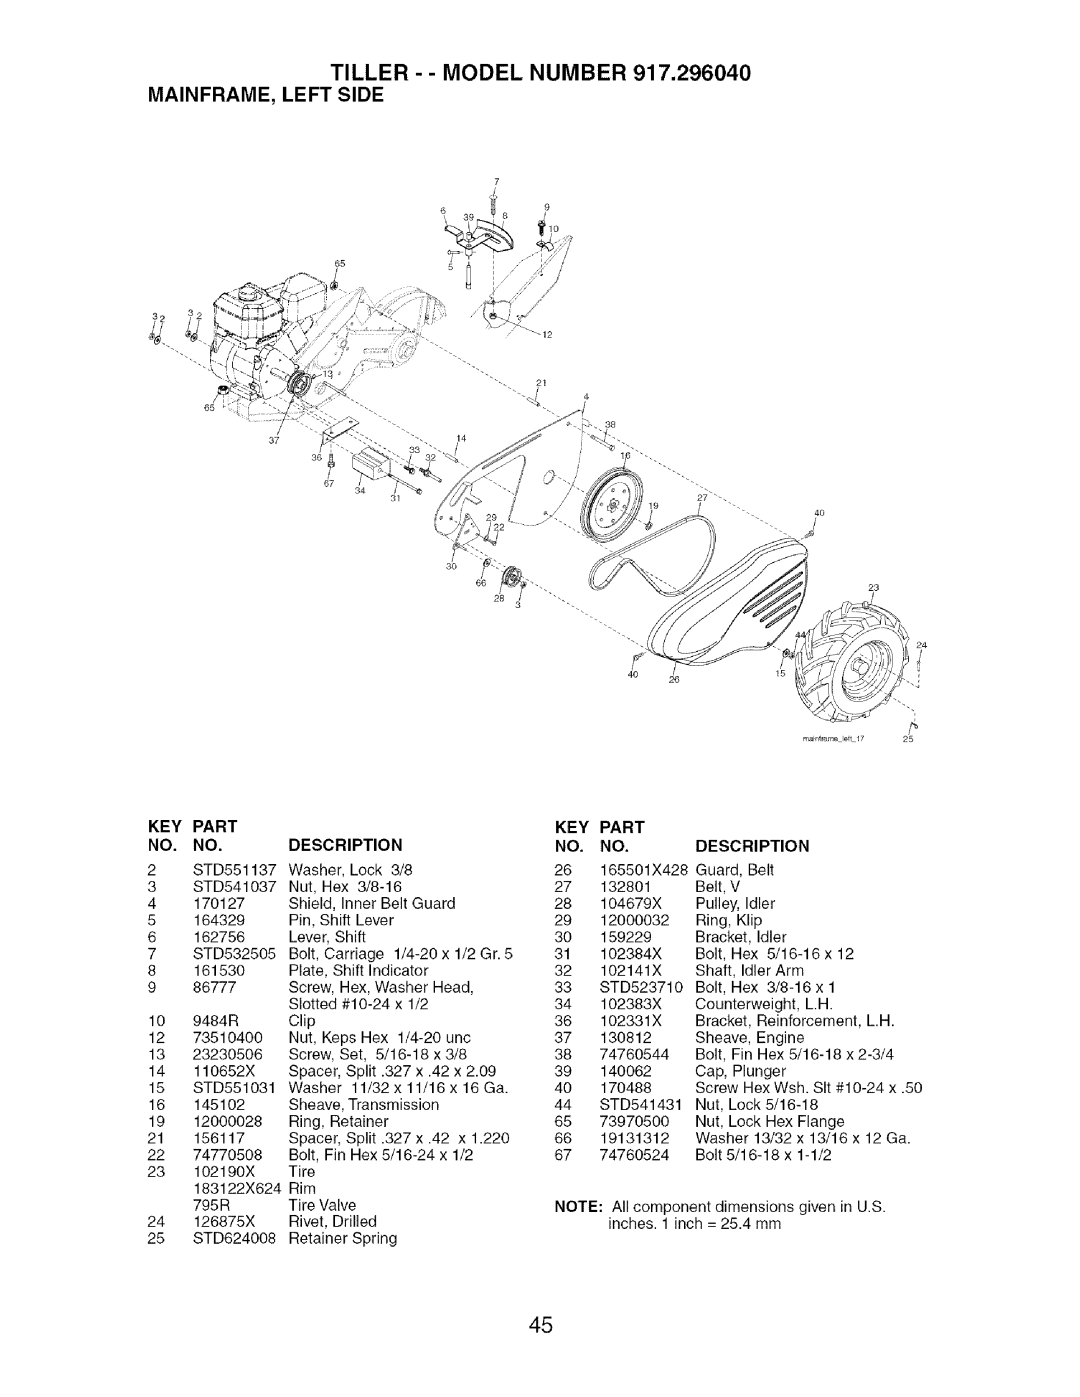 Craftsman 917.29604 owner manual Tiller - - Model Number Mainframe, Left Side, Part, Description 